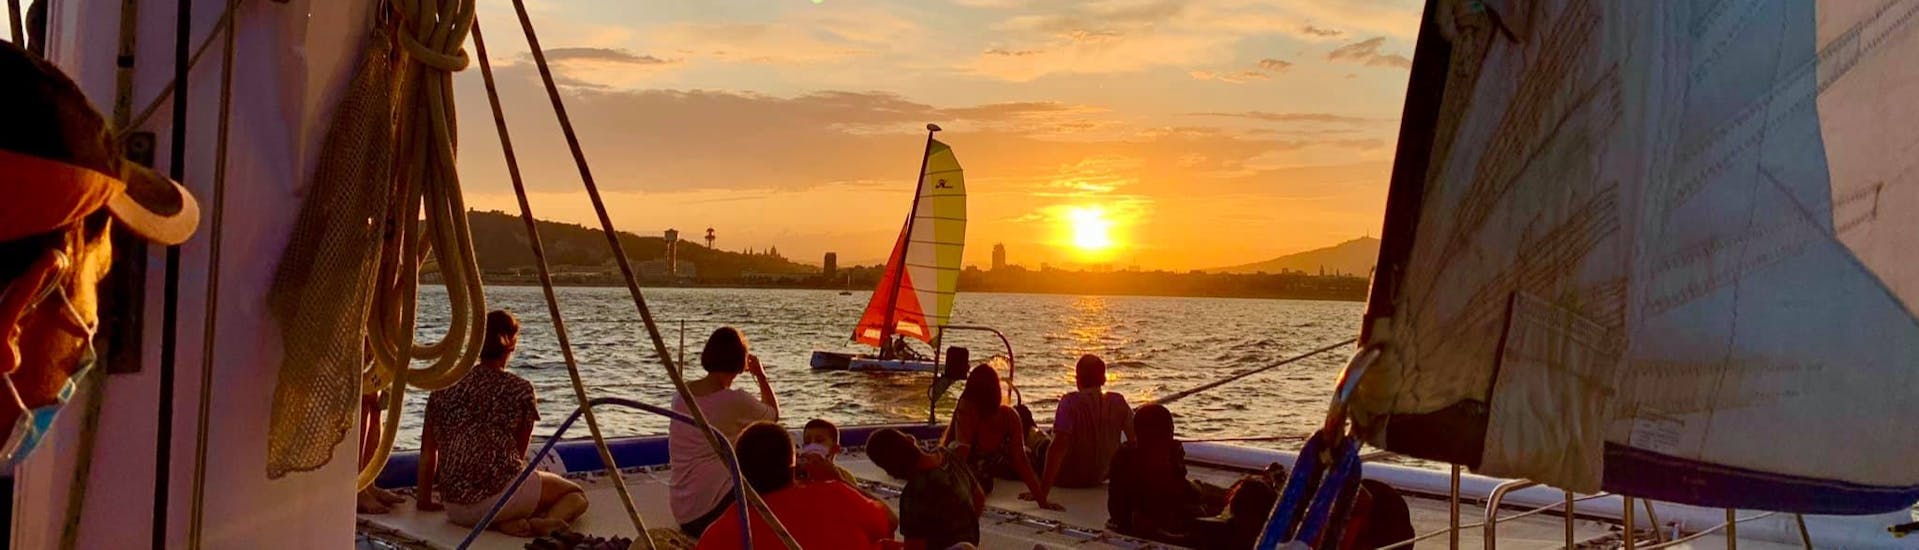 Gente disfrutando de una puesta de sol durante un paseo en catamarán por Barcelona con el catamarán Orsom Gotland Charter.